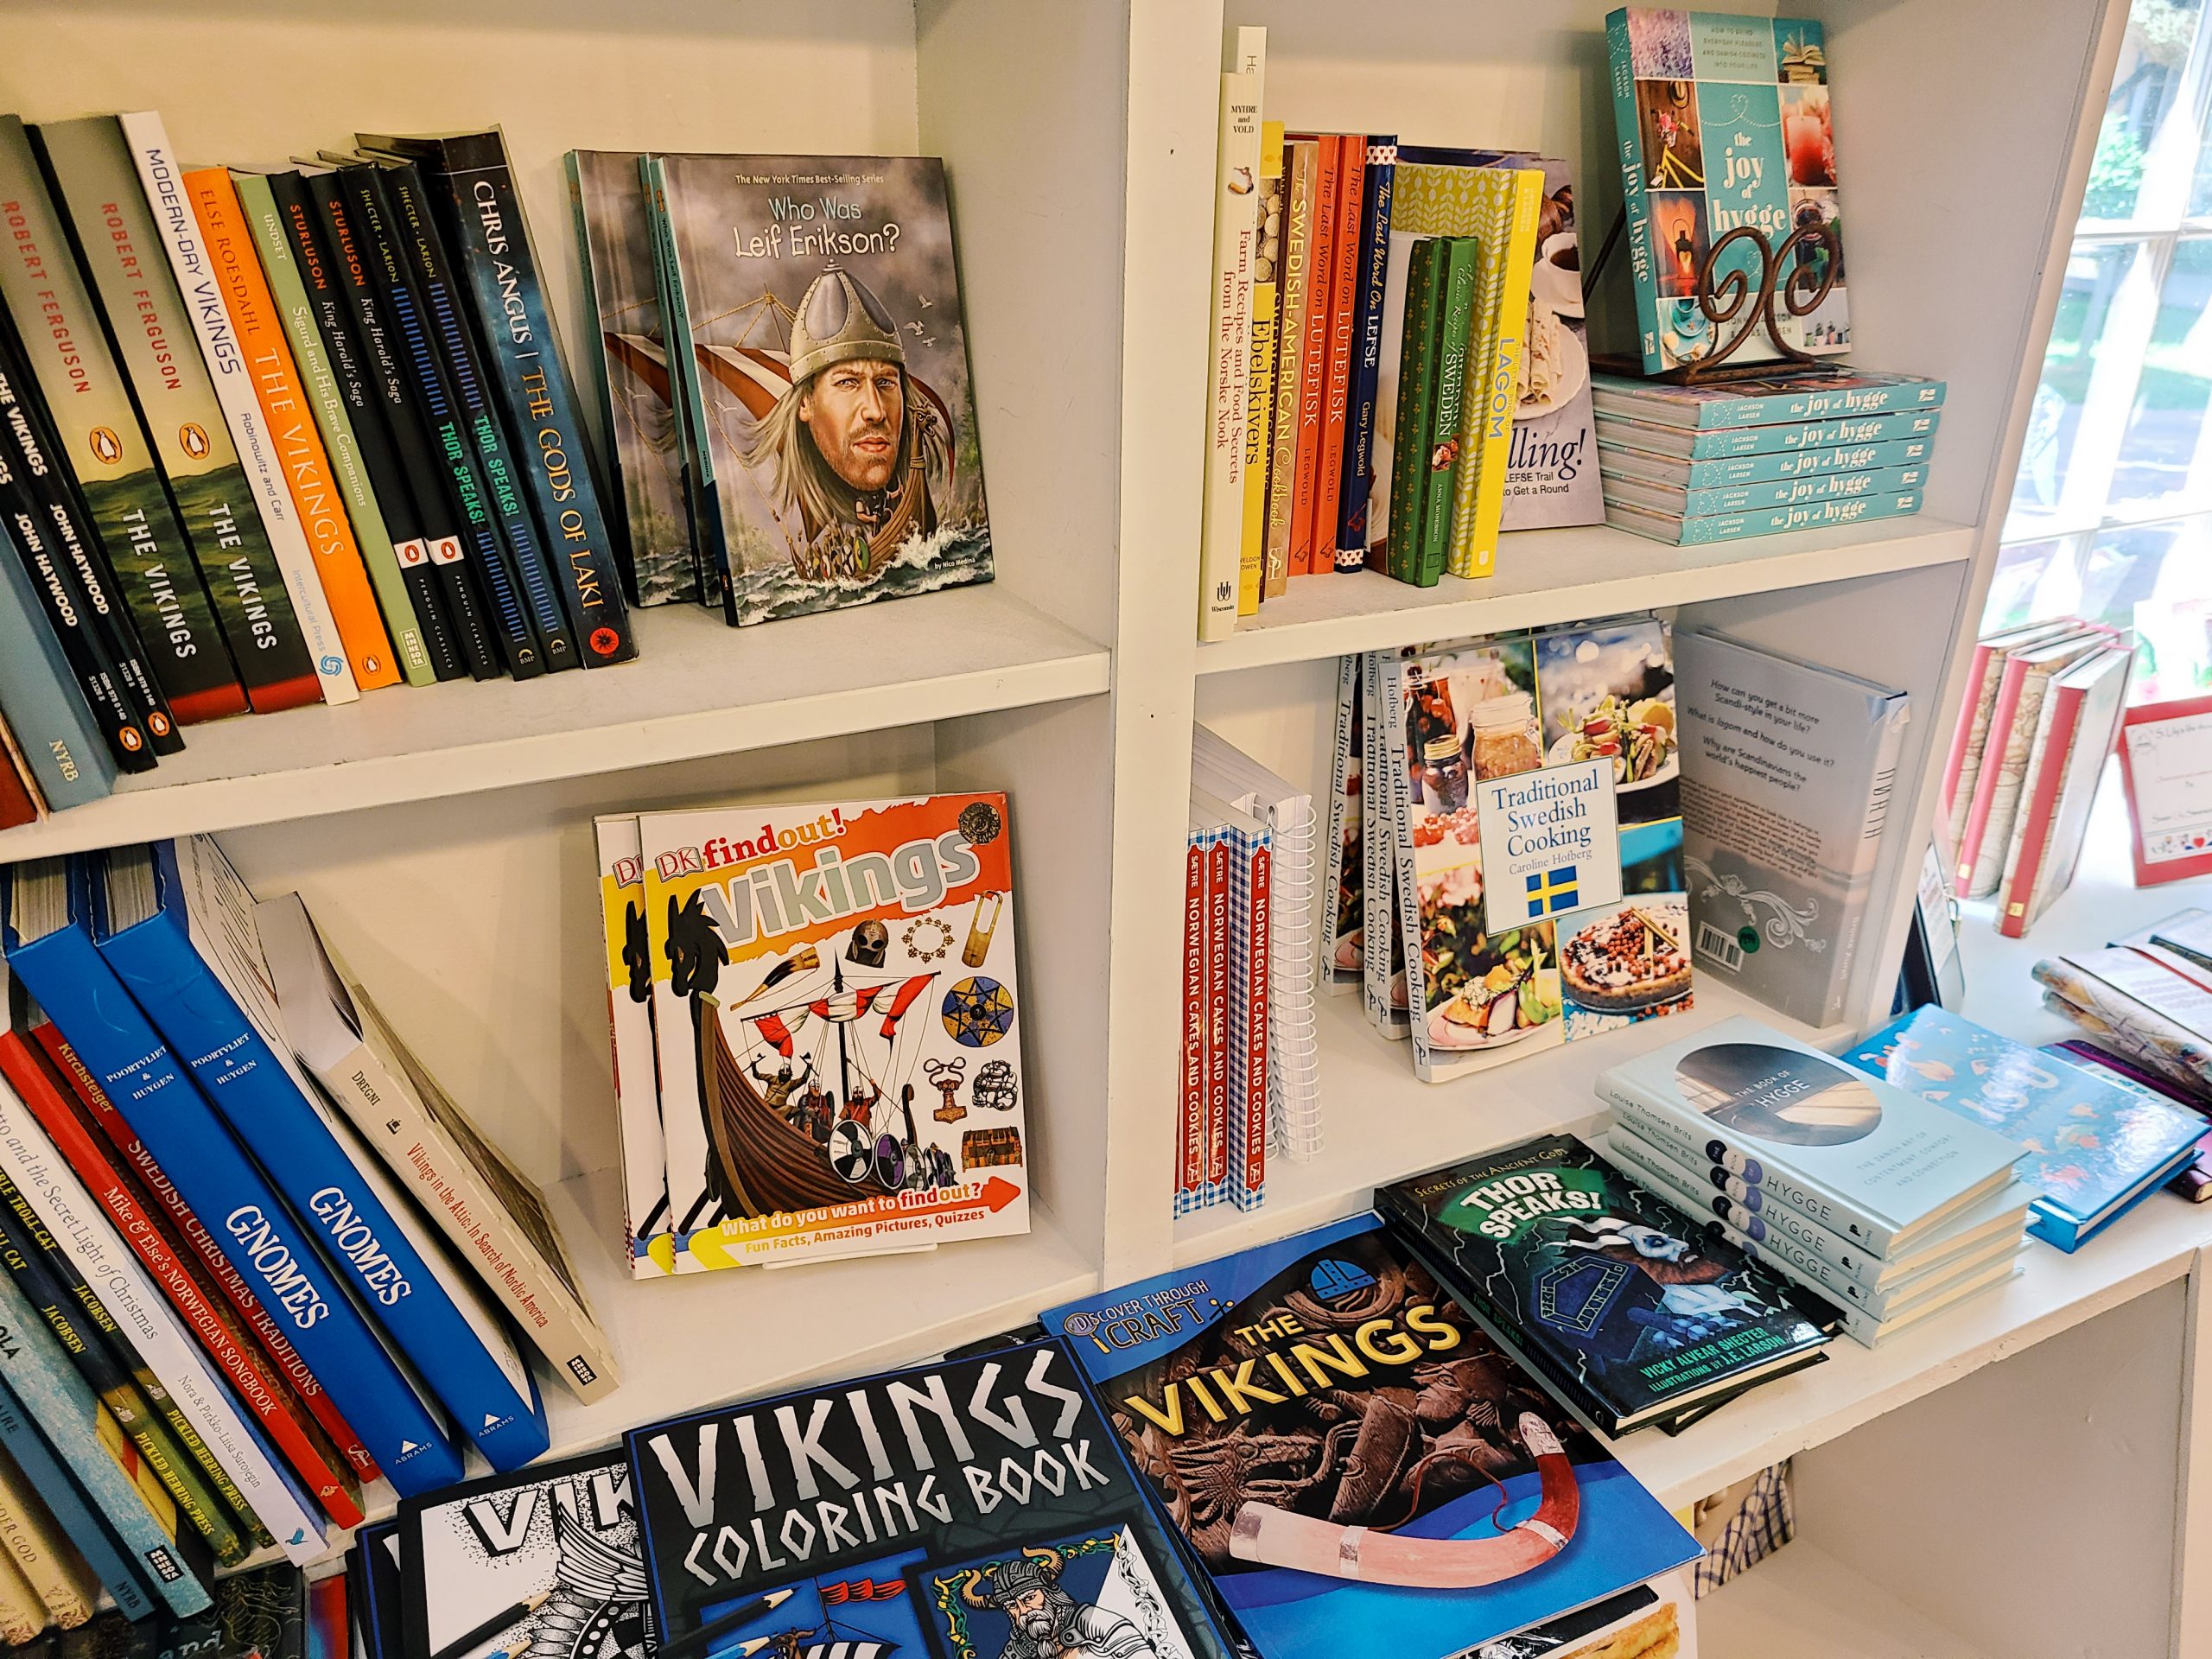 Shelves full of viking themed books for purchase